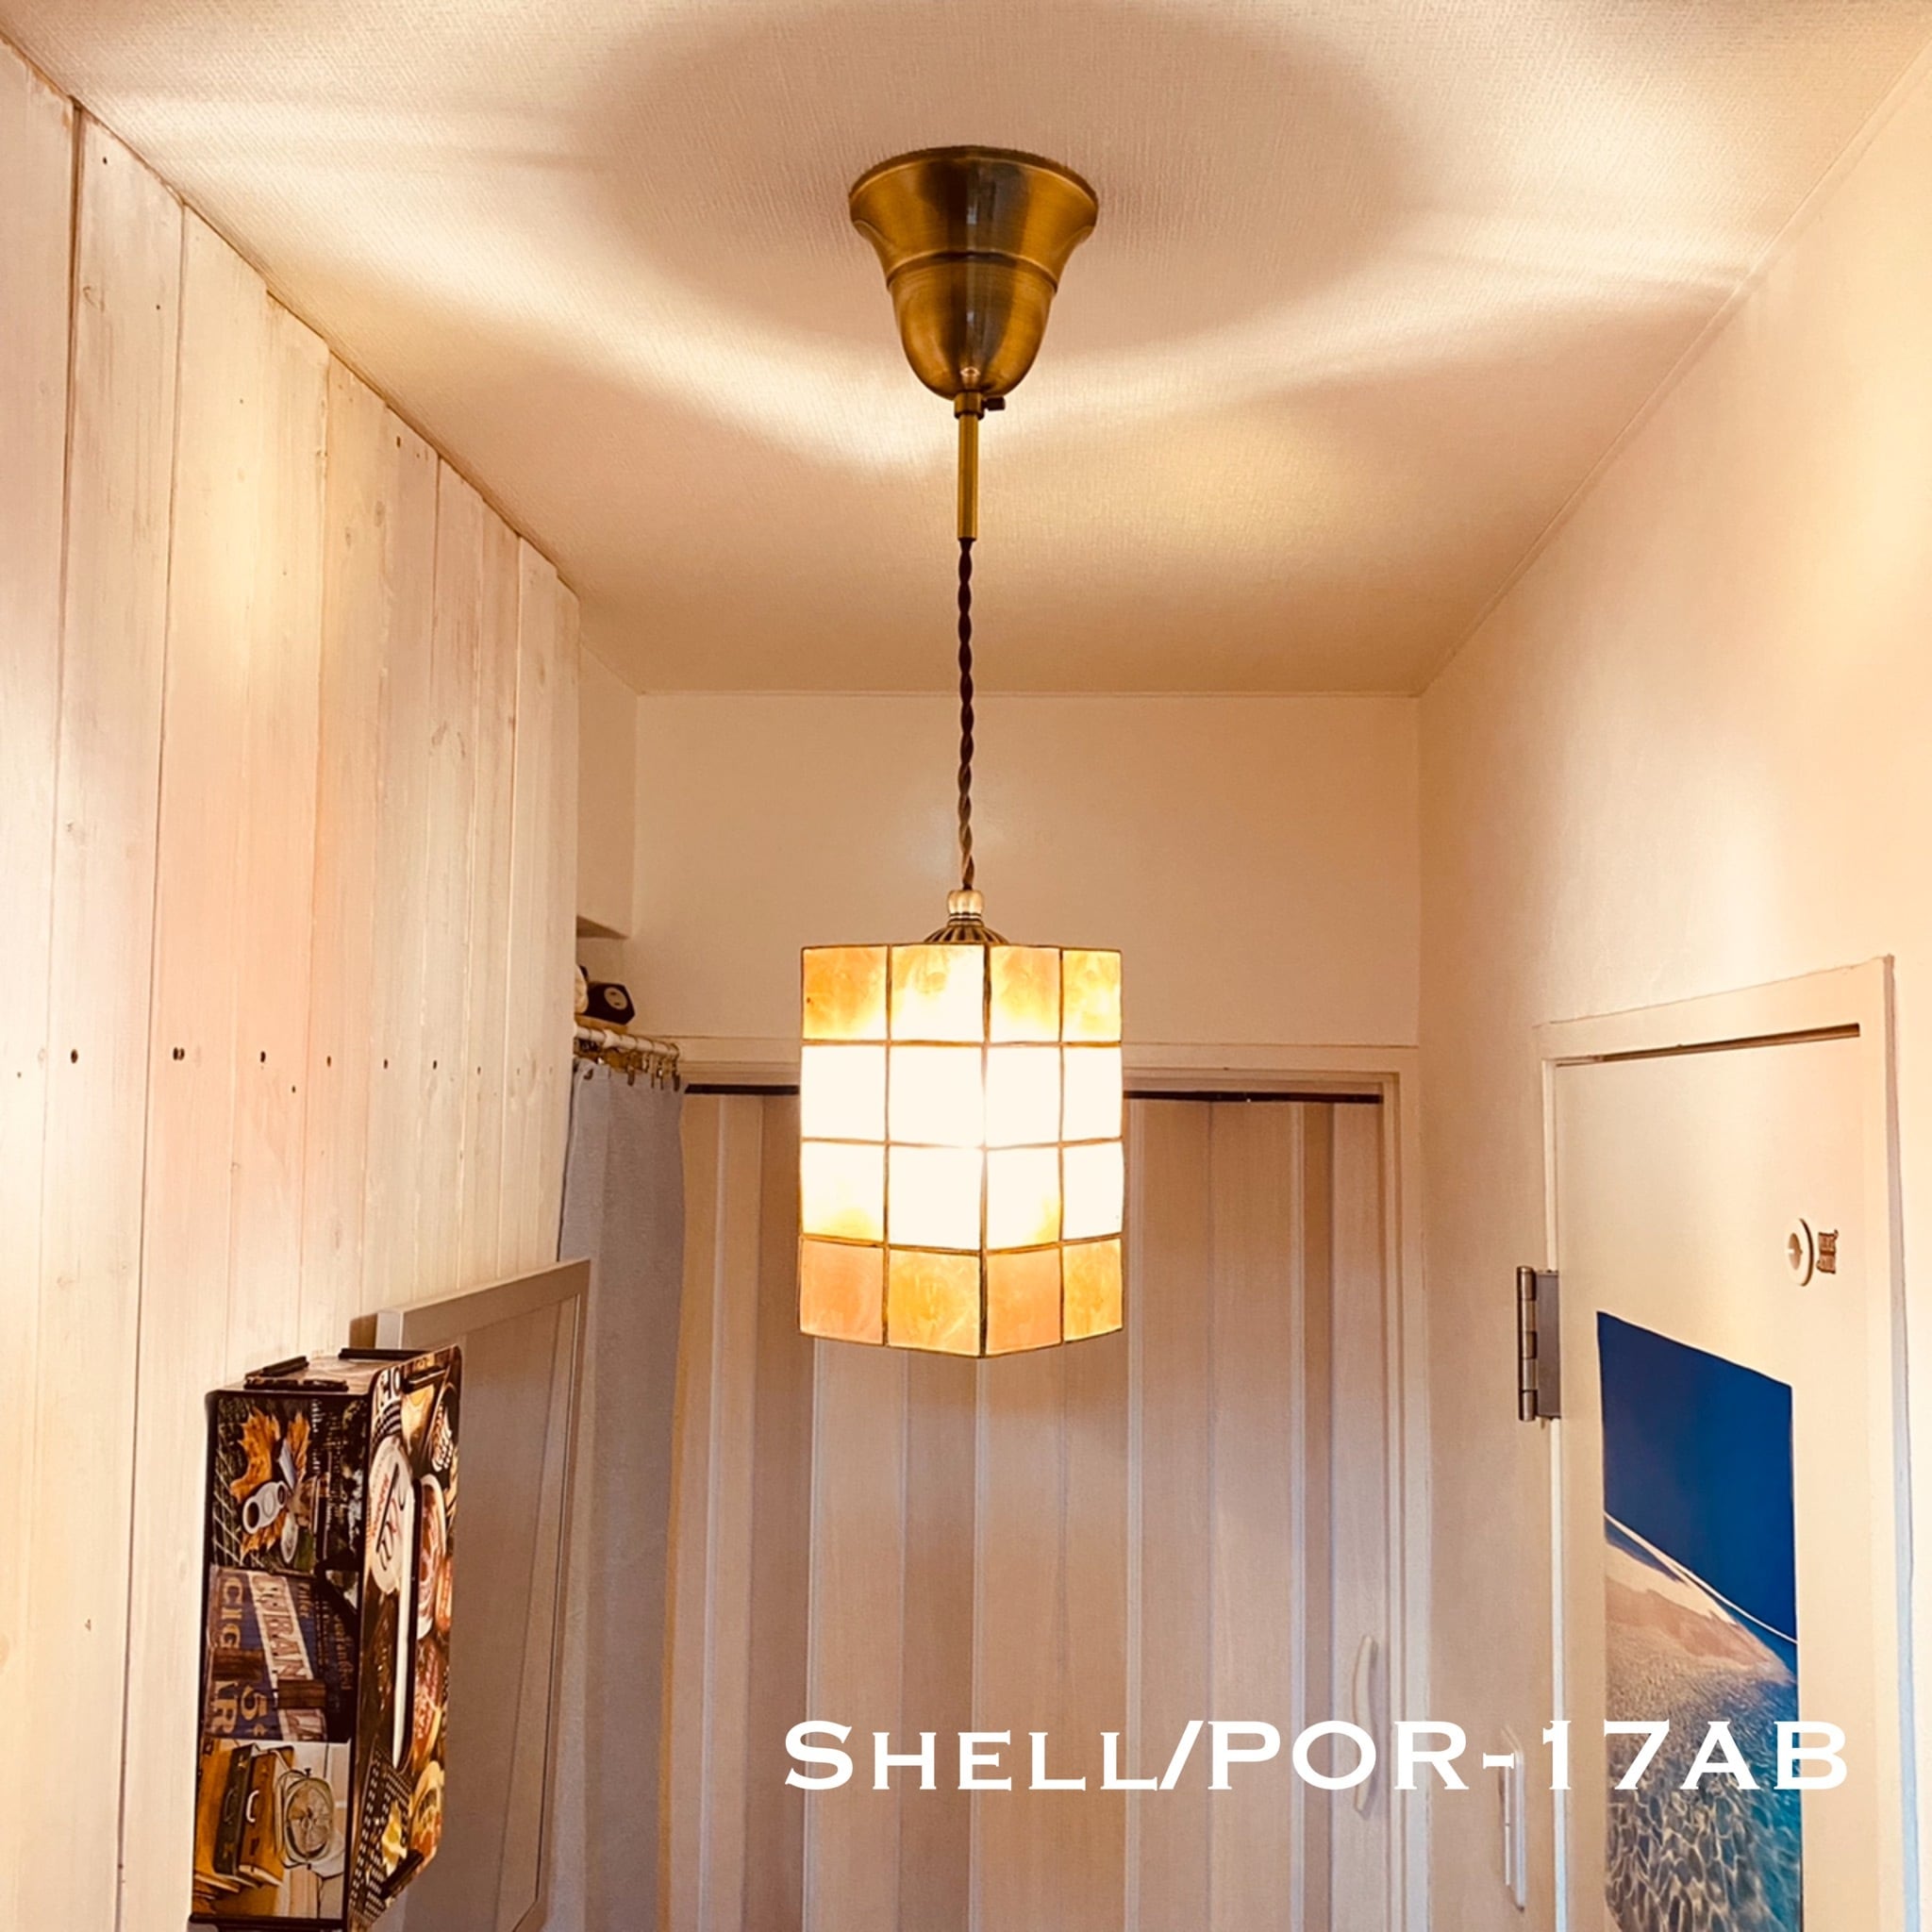 照明 ペンダントライト Shell/PORAB シェル カピス貝 ランプ